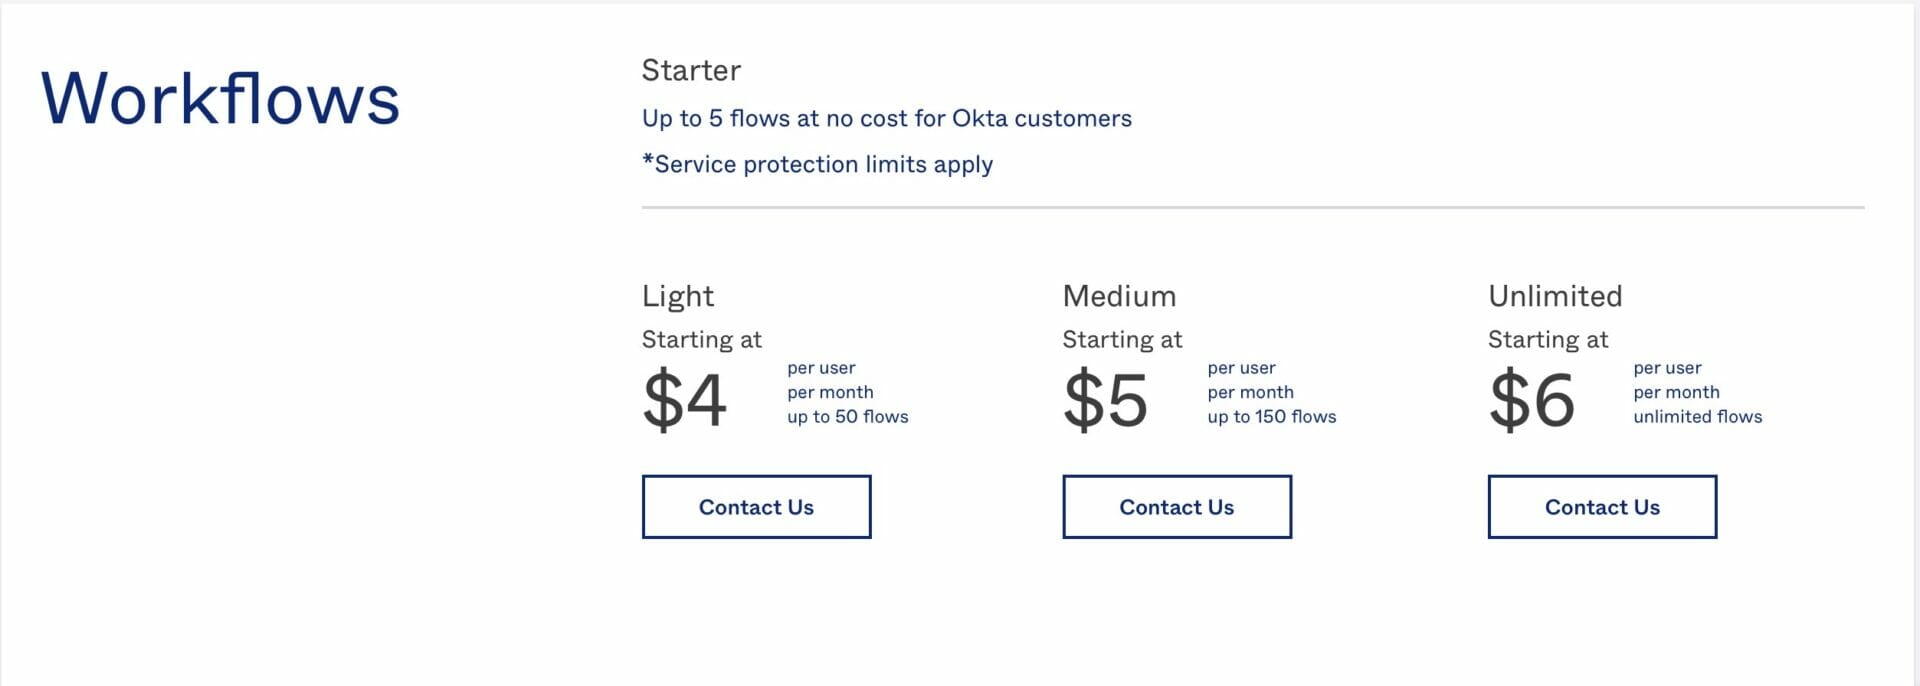 Okta workflows pricing